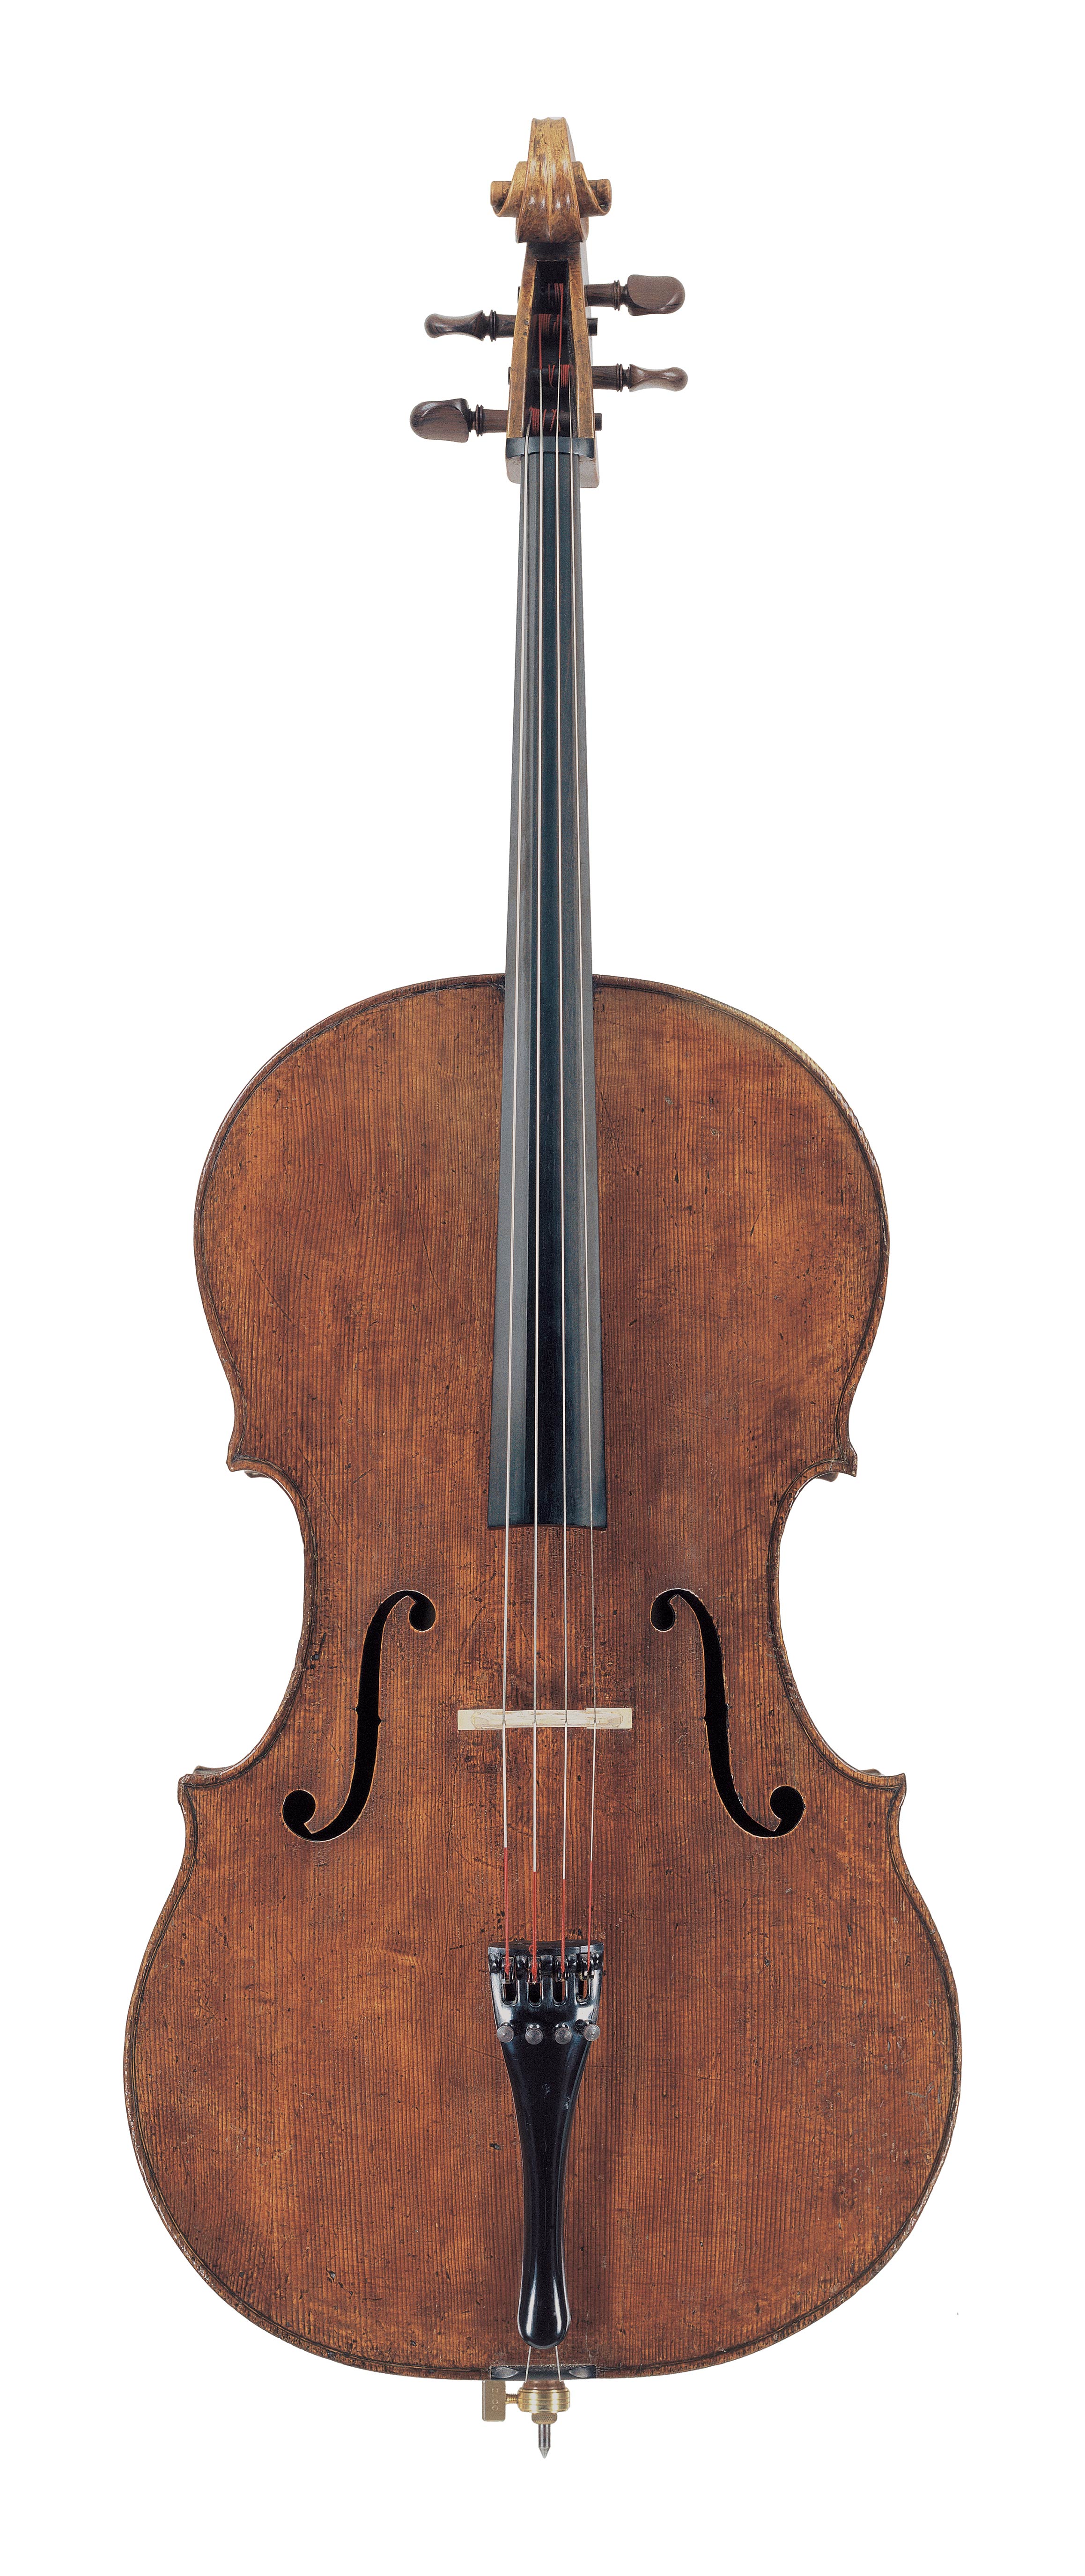 Cello by Carlo Giuseppe Testore